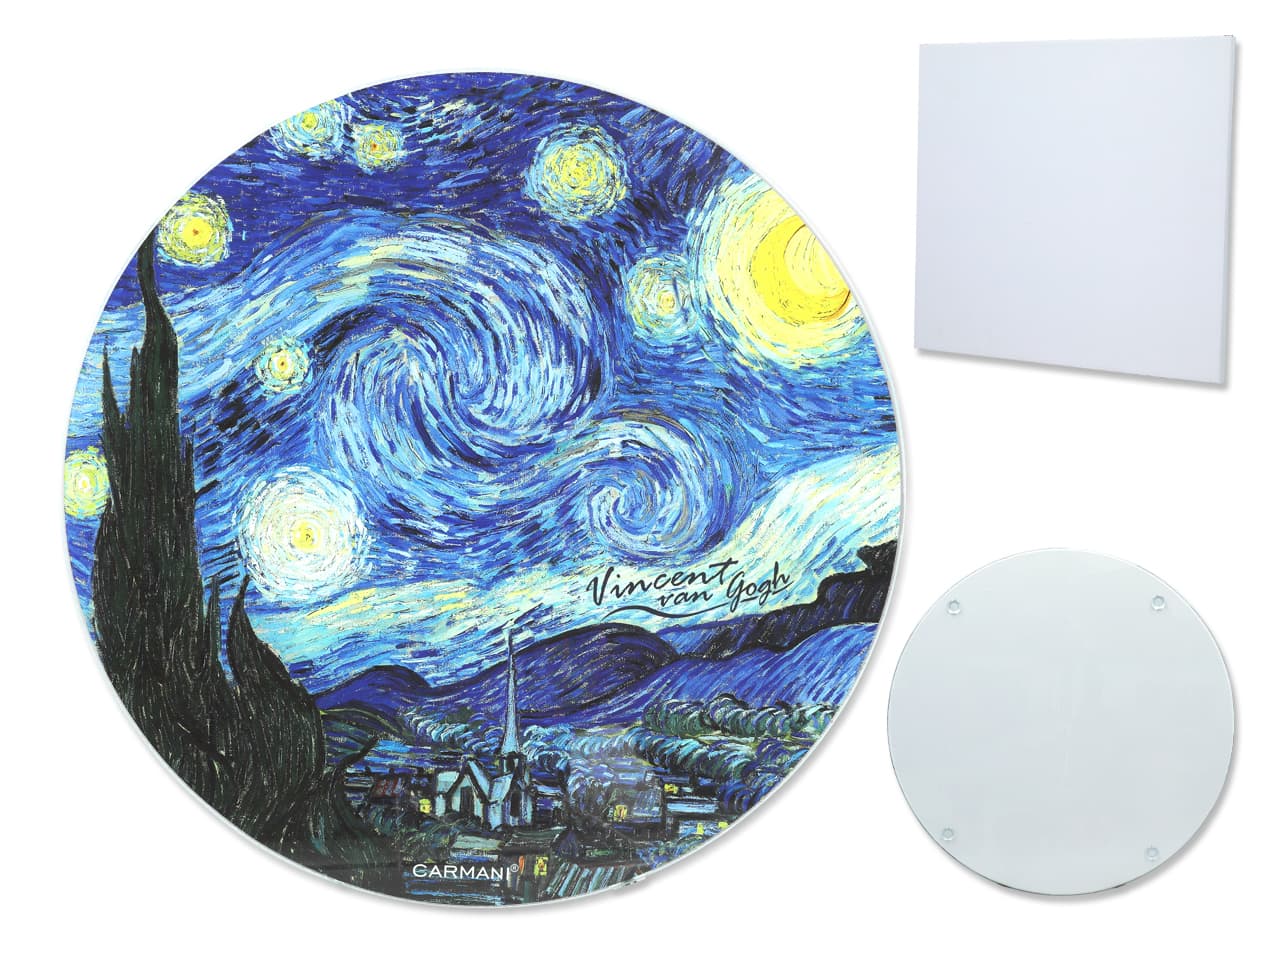 

Deska szklana, okrągła - V. van Gogh, Gwiaździsta Noc (CARMANI)